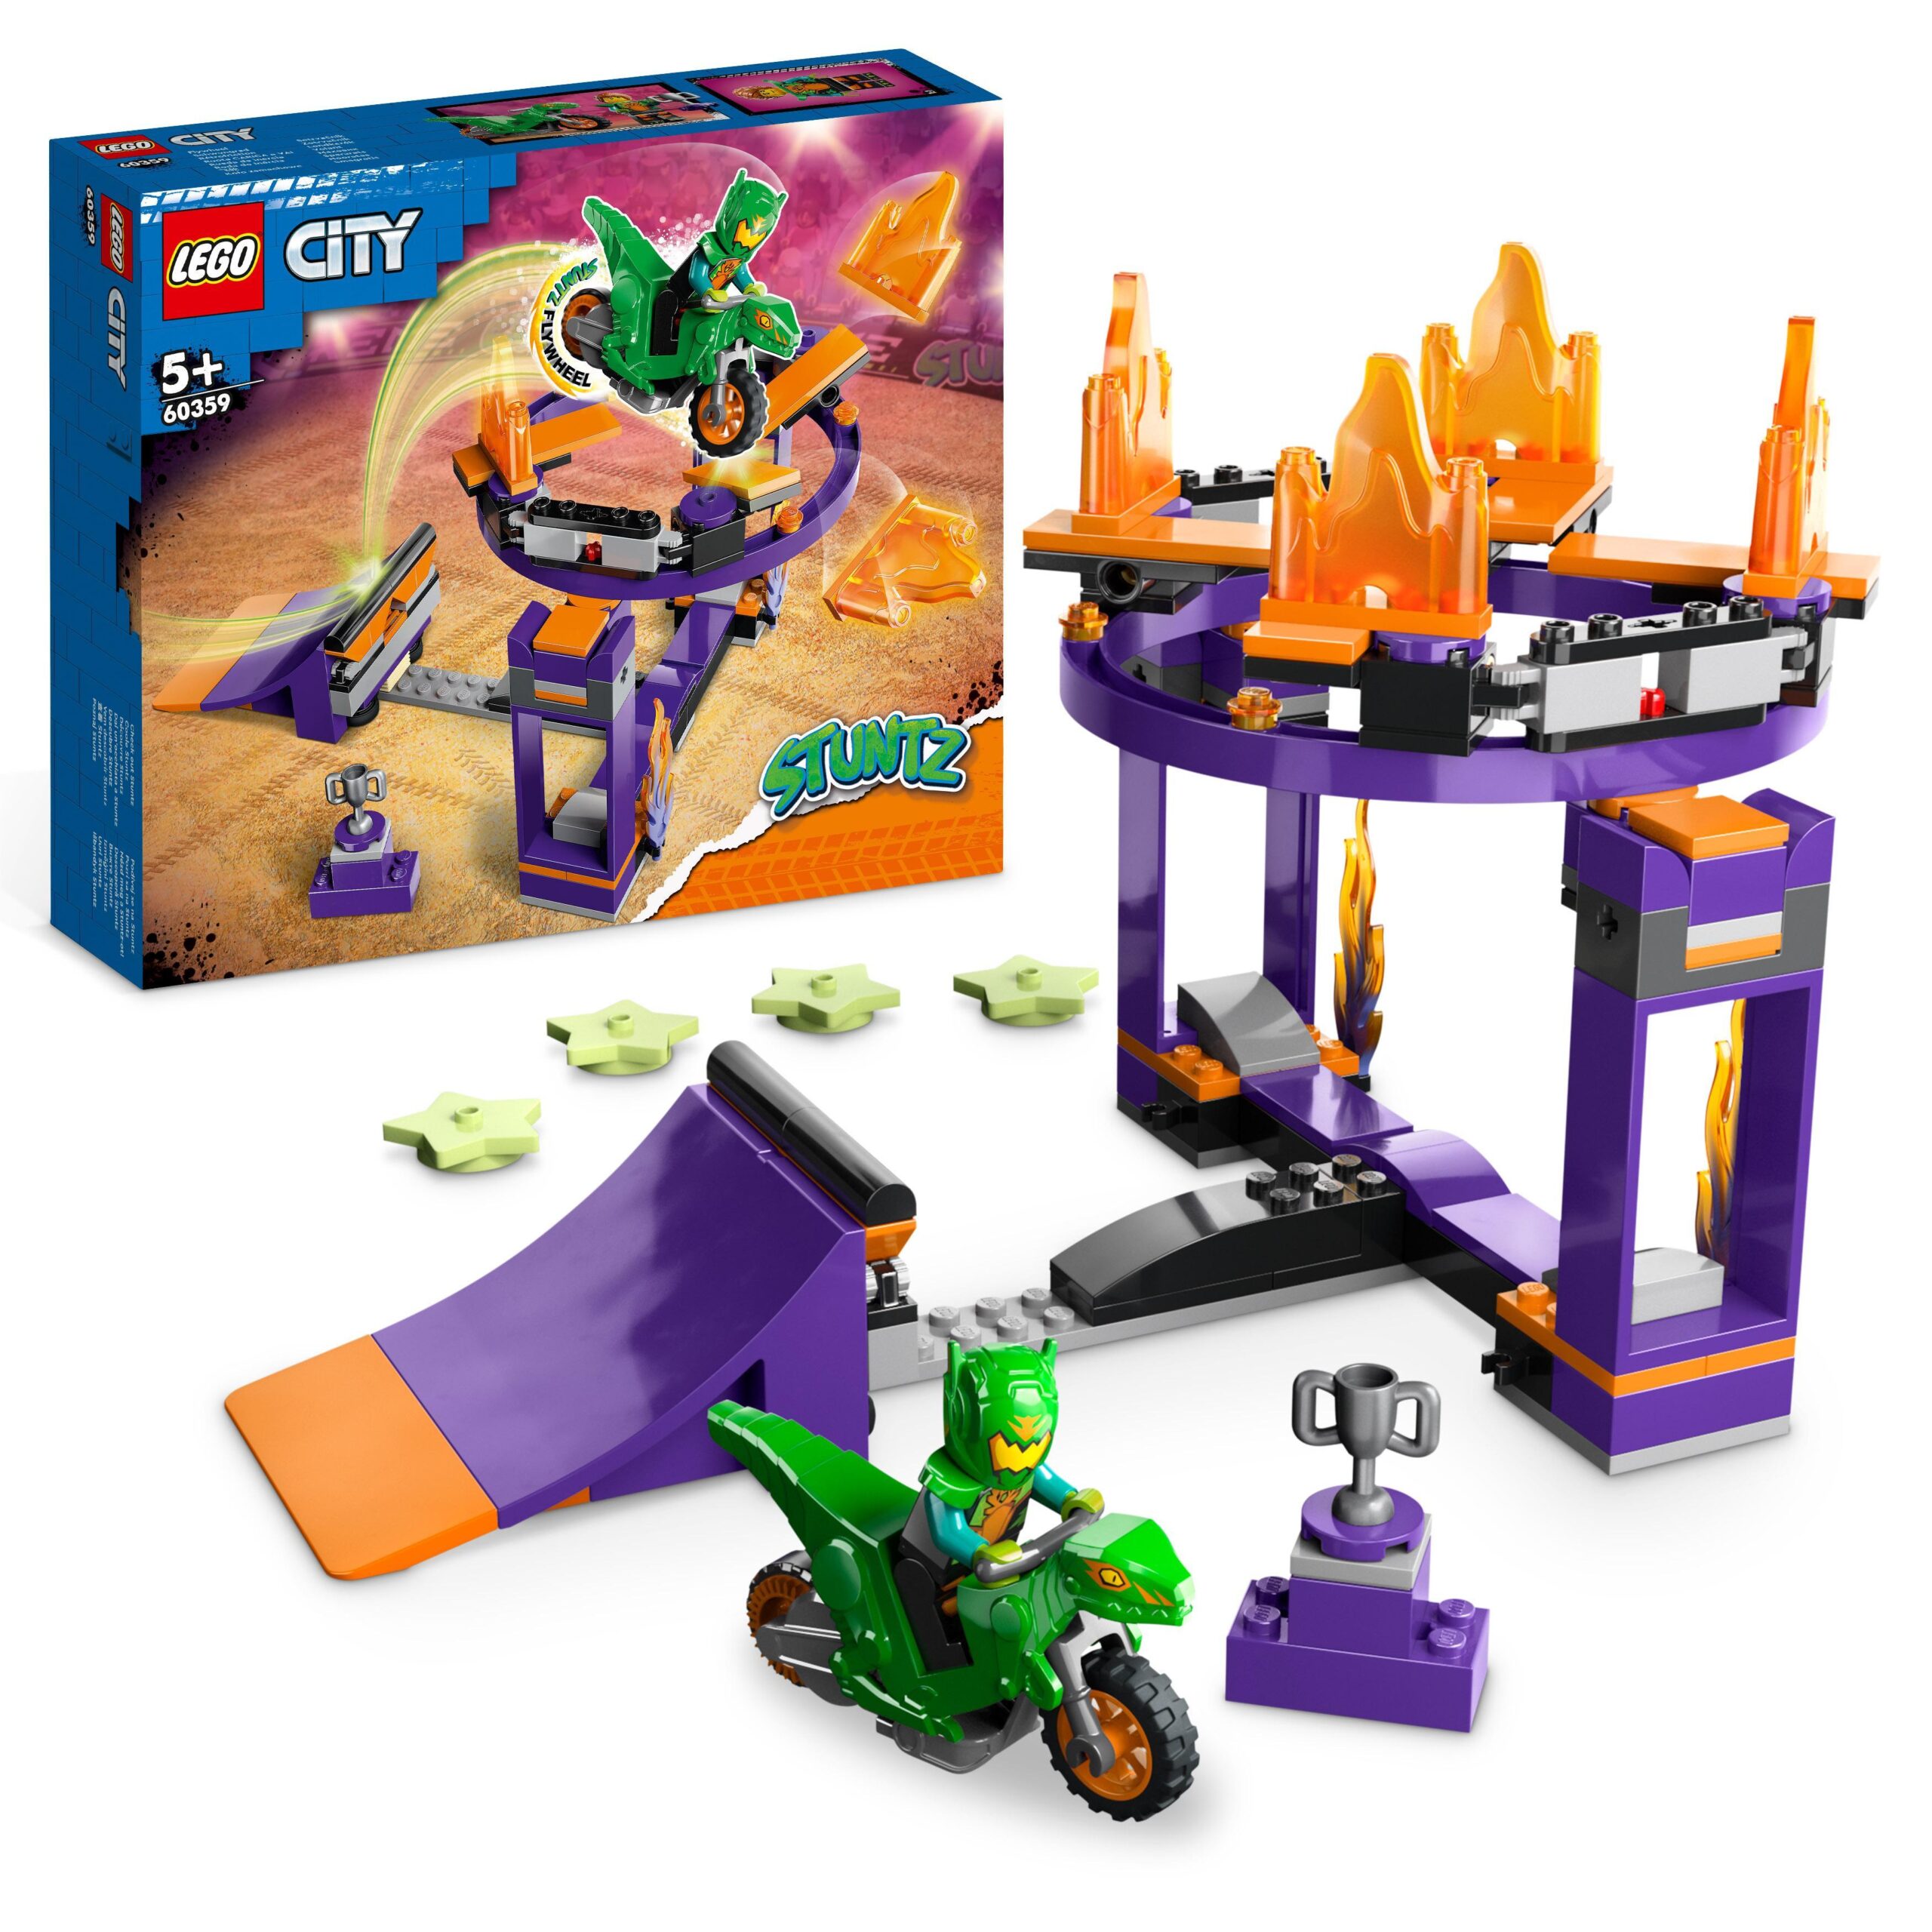 Lego city stuntz 60359 sfida acrobatica: schiacciata sulla rampa, set 2 in 1 con moto giocattolo dinosauro carica e vai - LEGO CITY